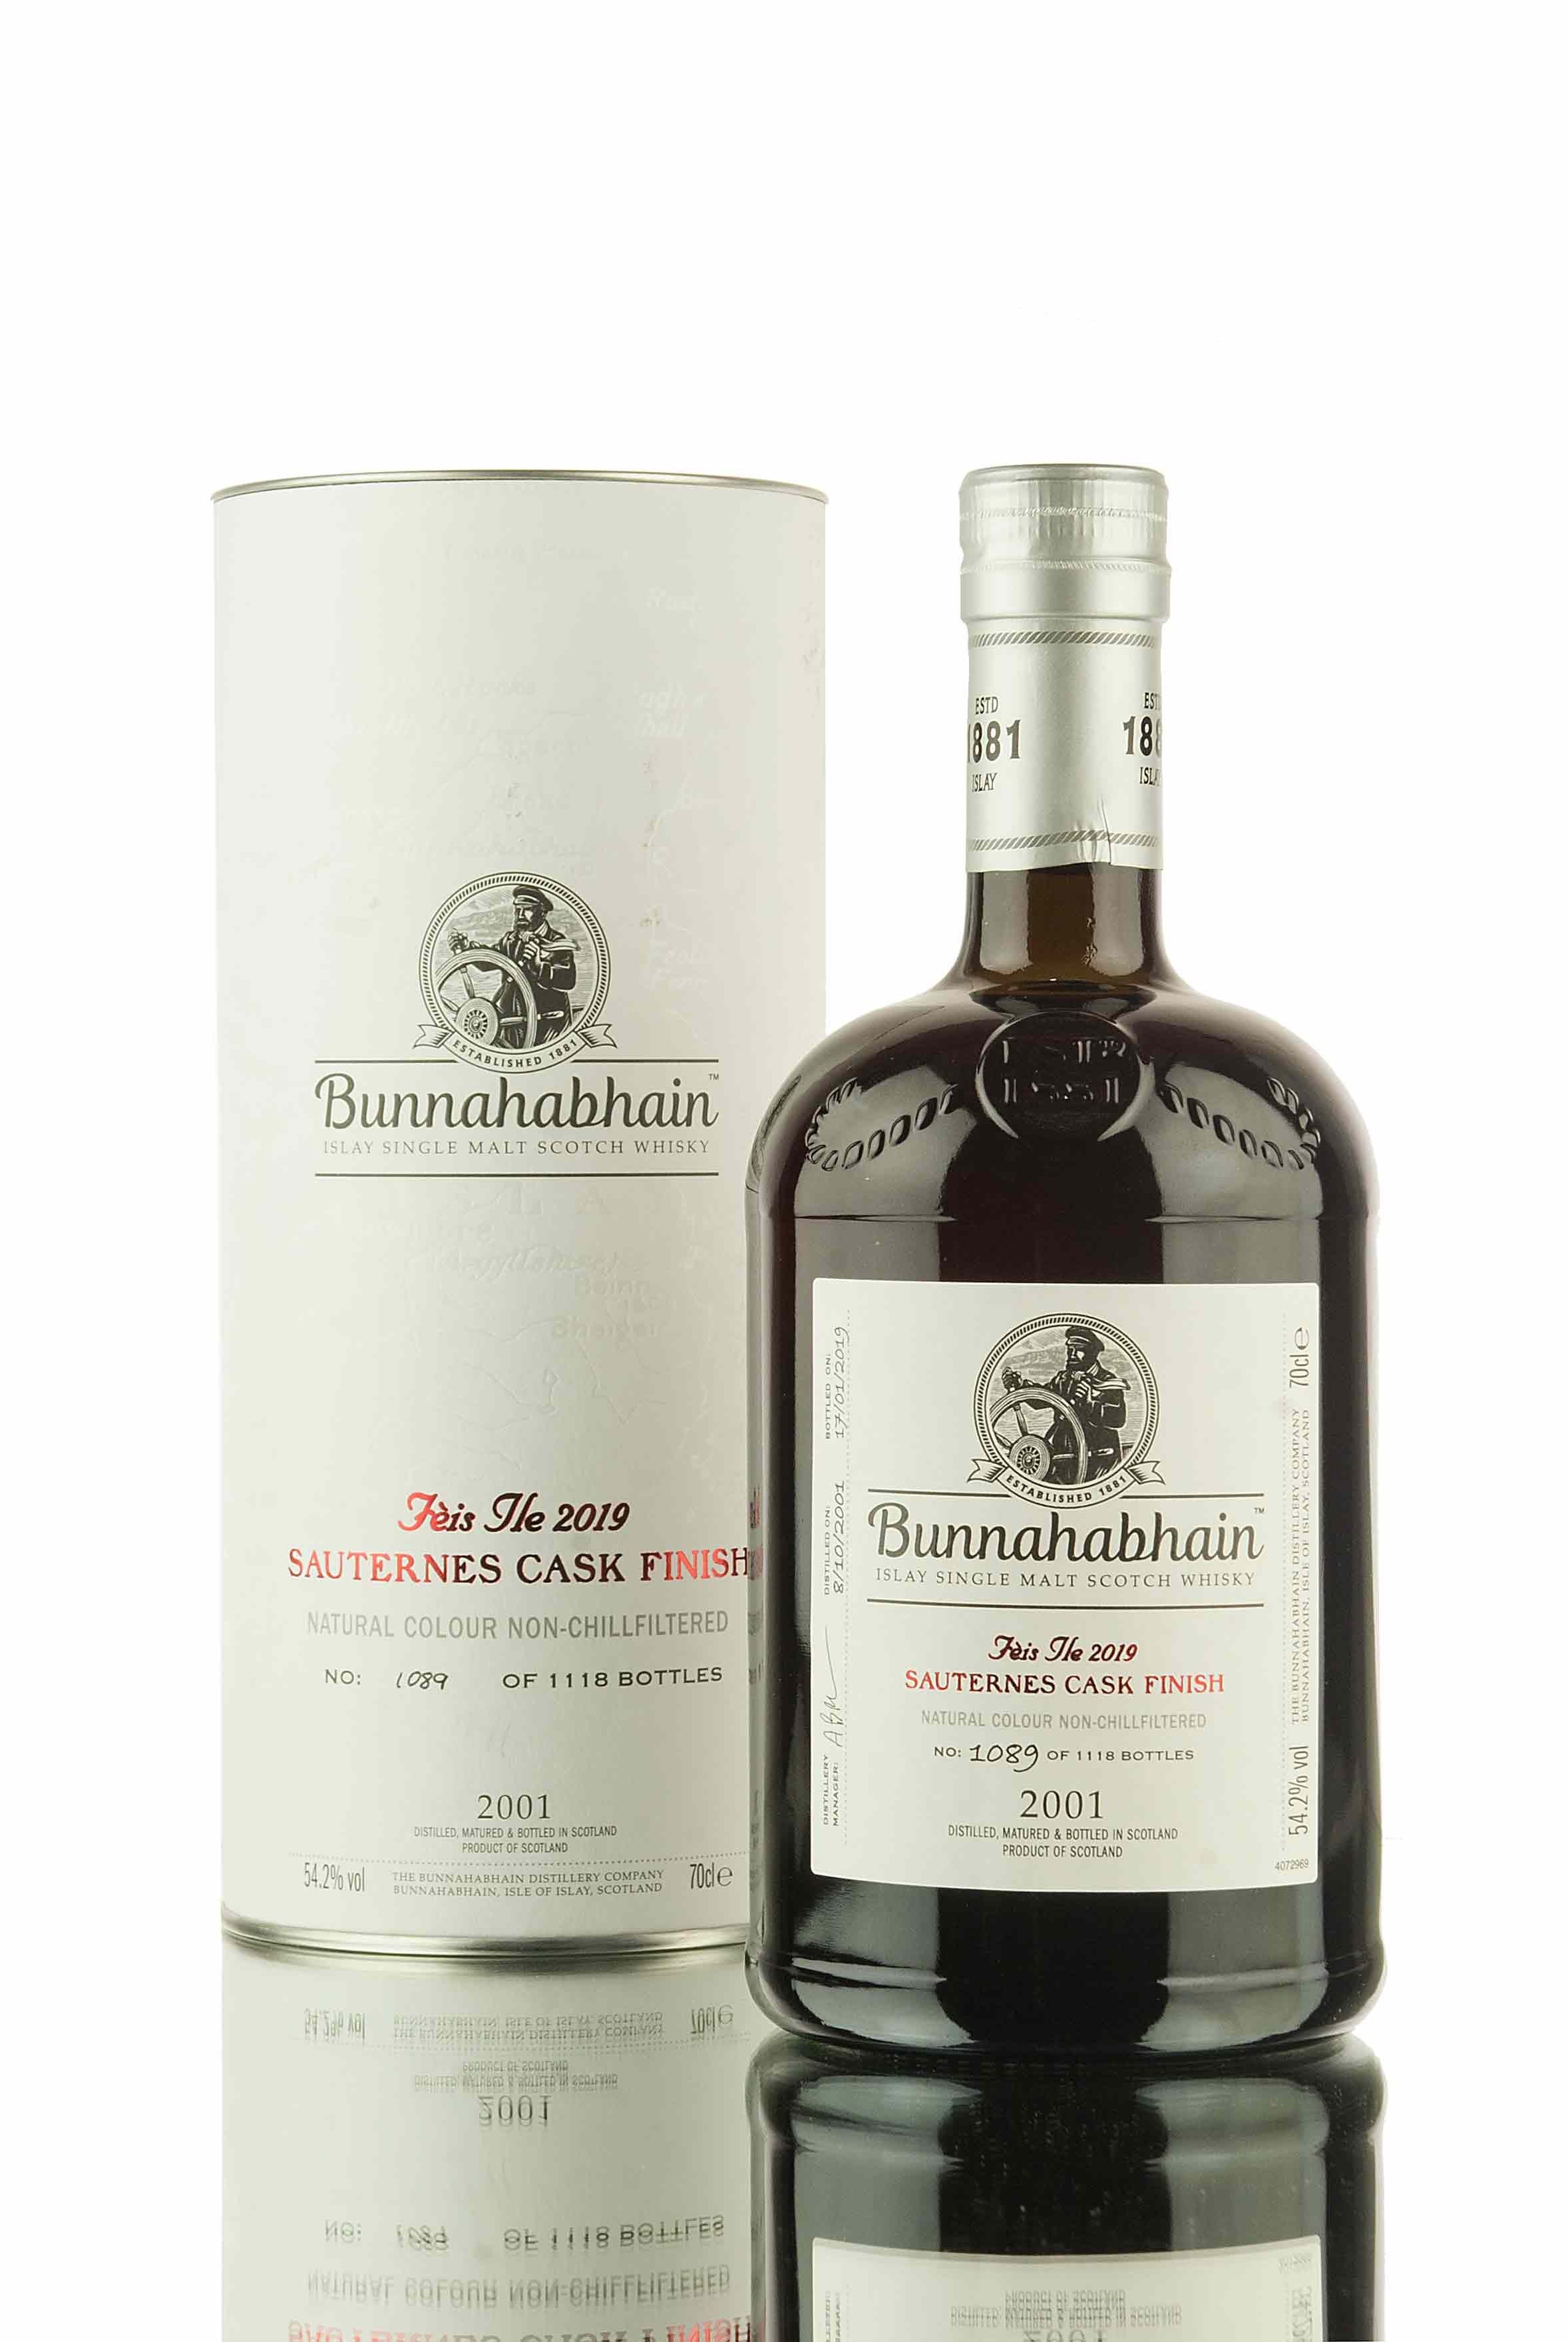 Bunnahabhain 17 Year Old - 2001 | Feis Ile 2019 (Sauternes)